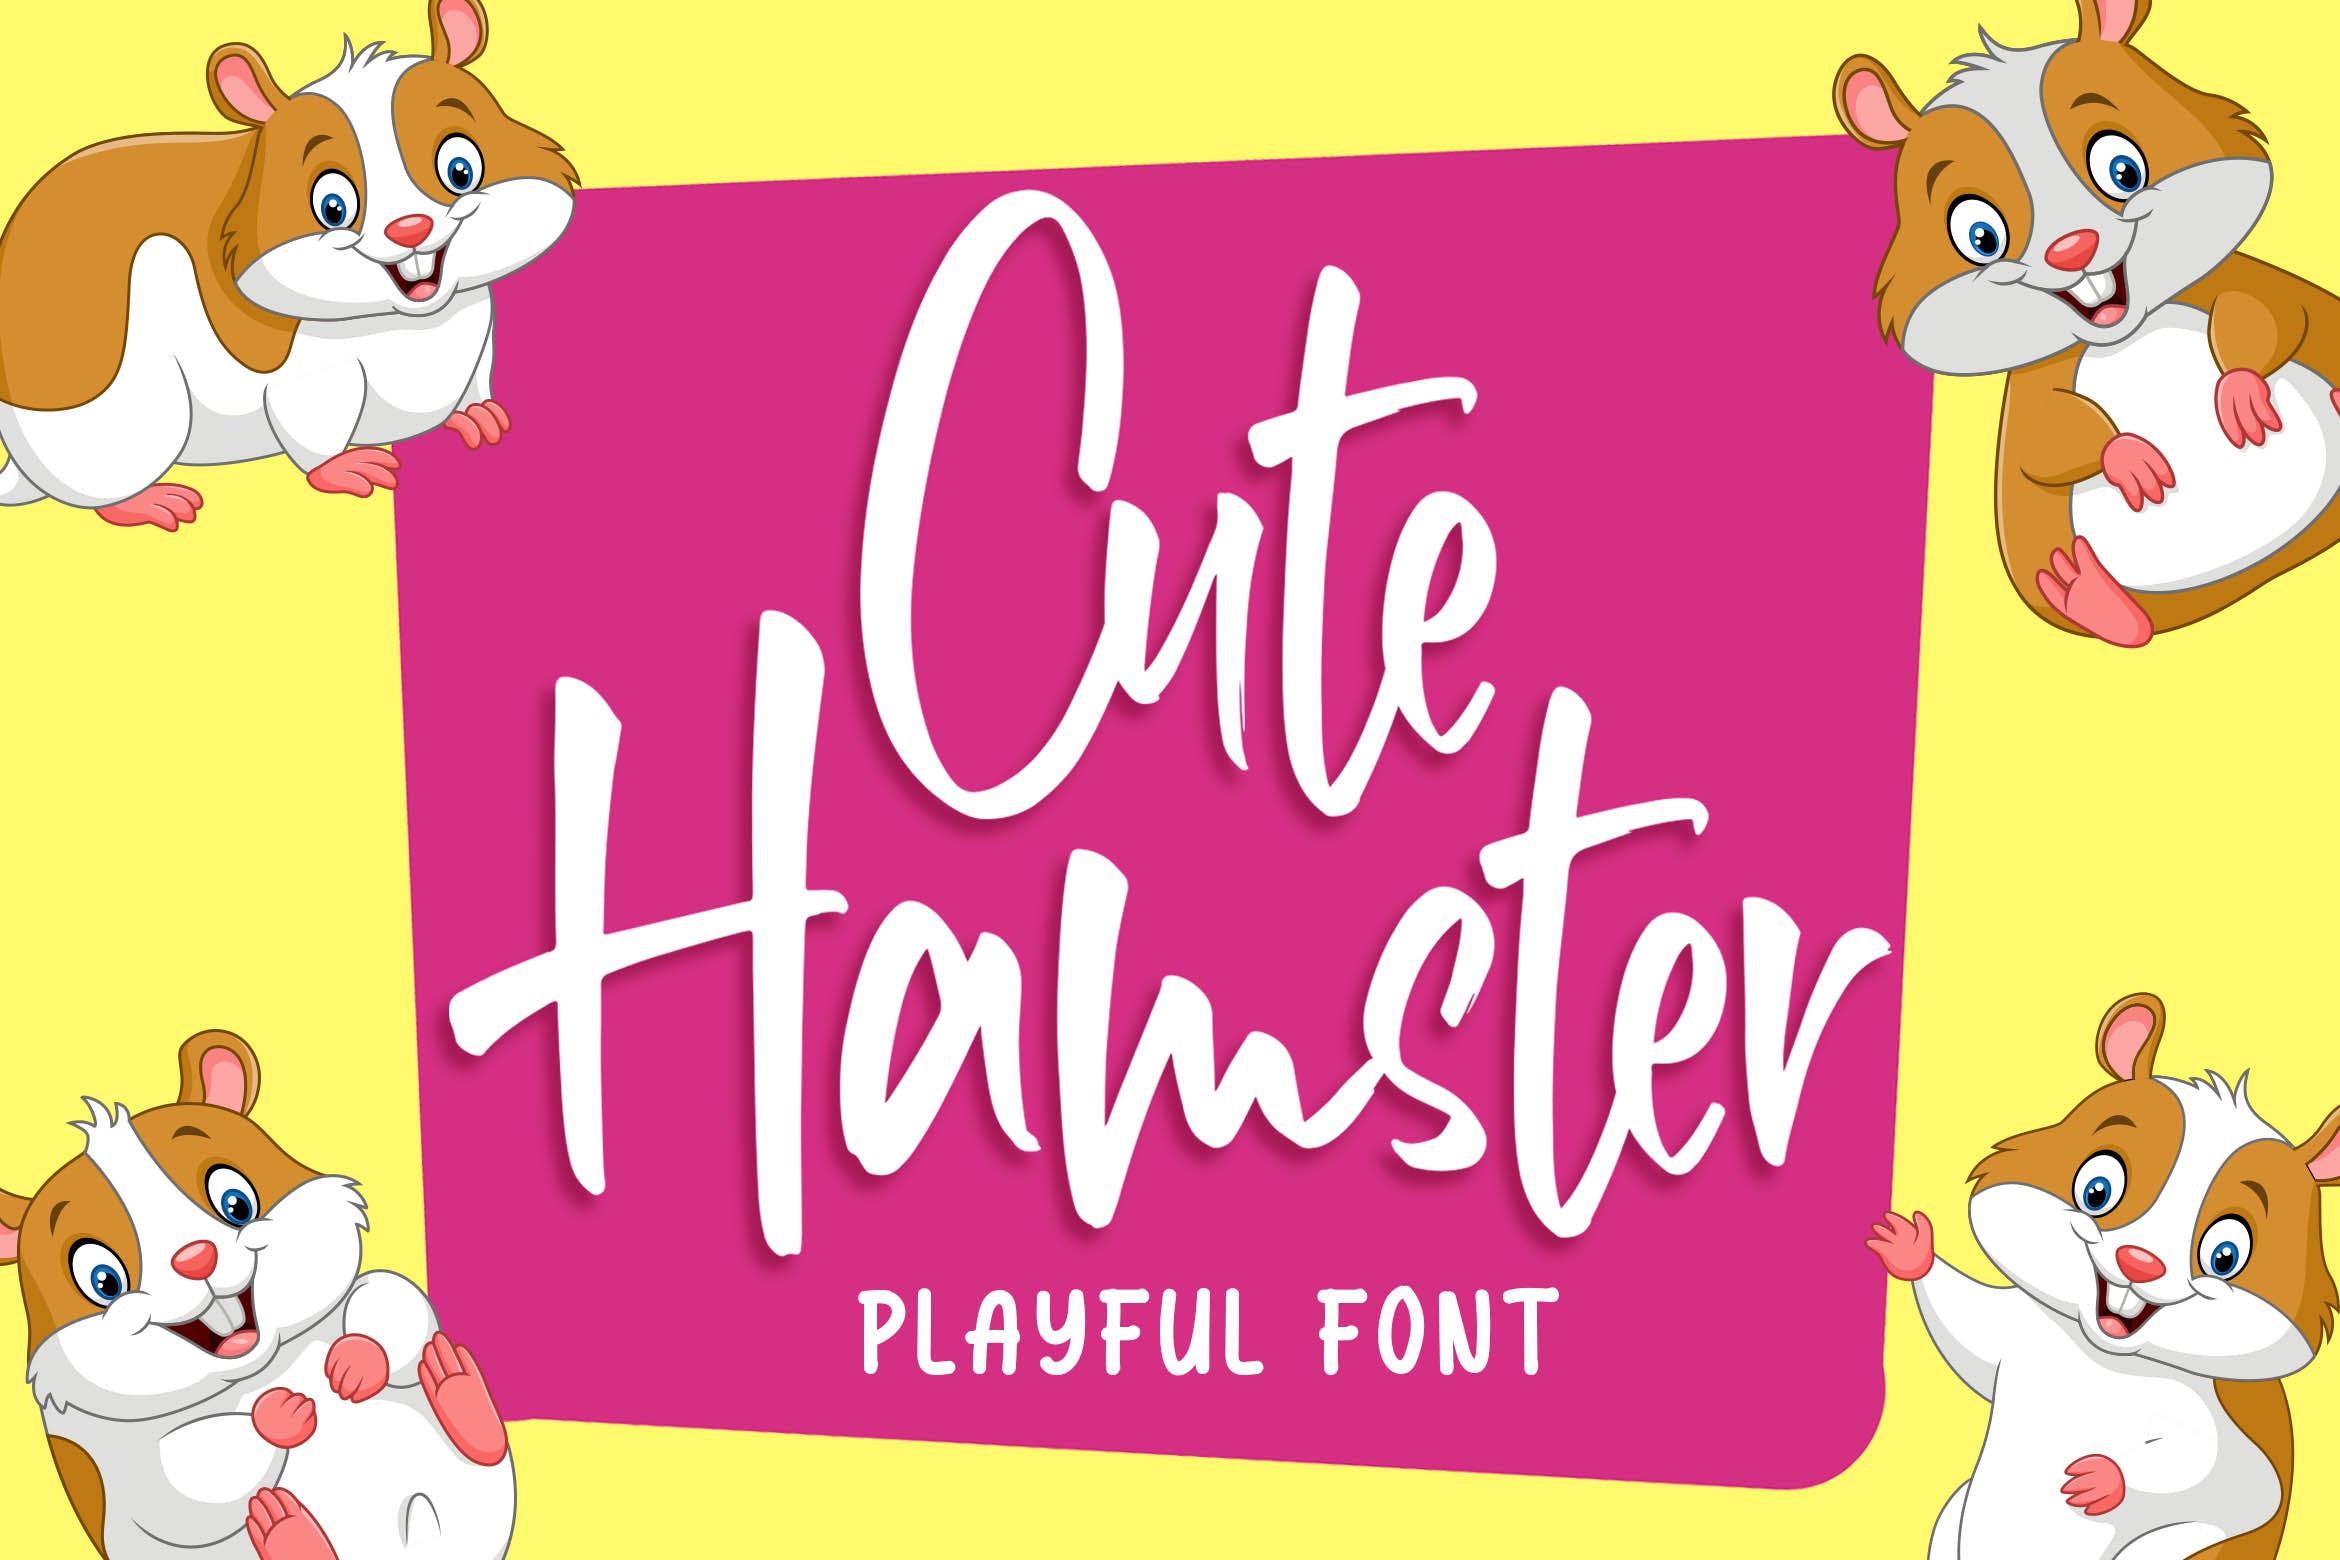 俏皮可爱风格英文手写装饰字体16图库精选 Cute Hamster – Playful Font插图